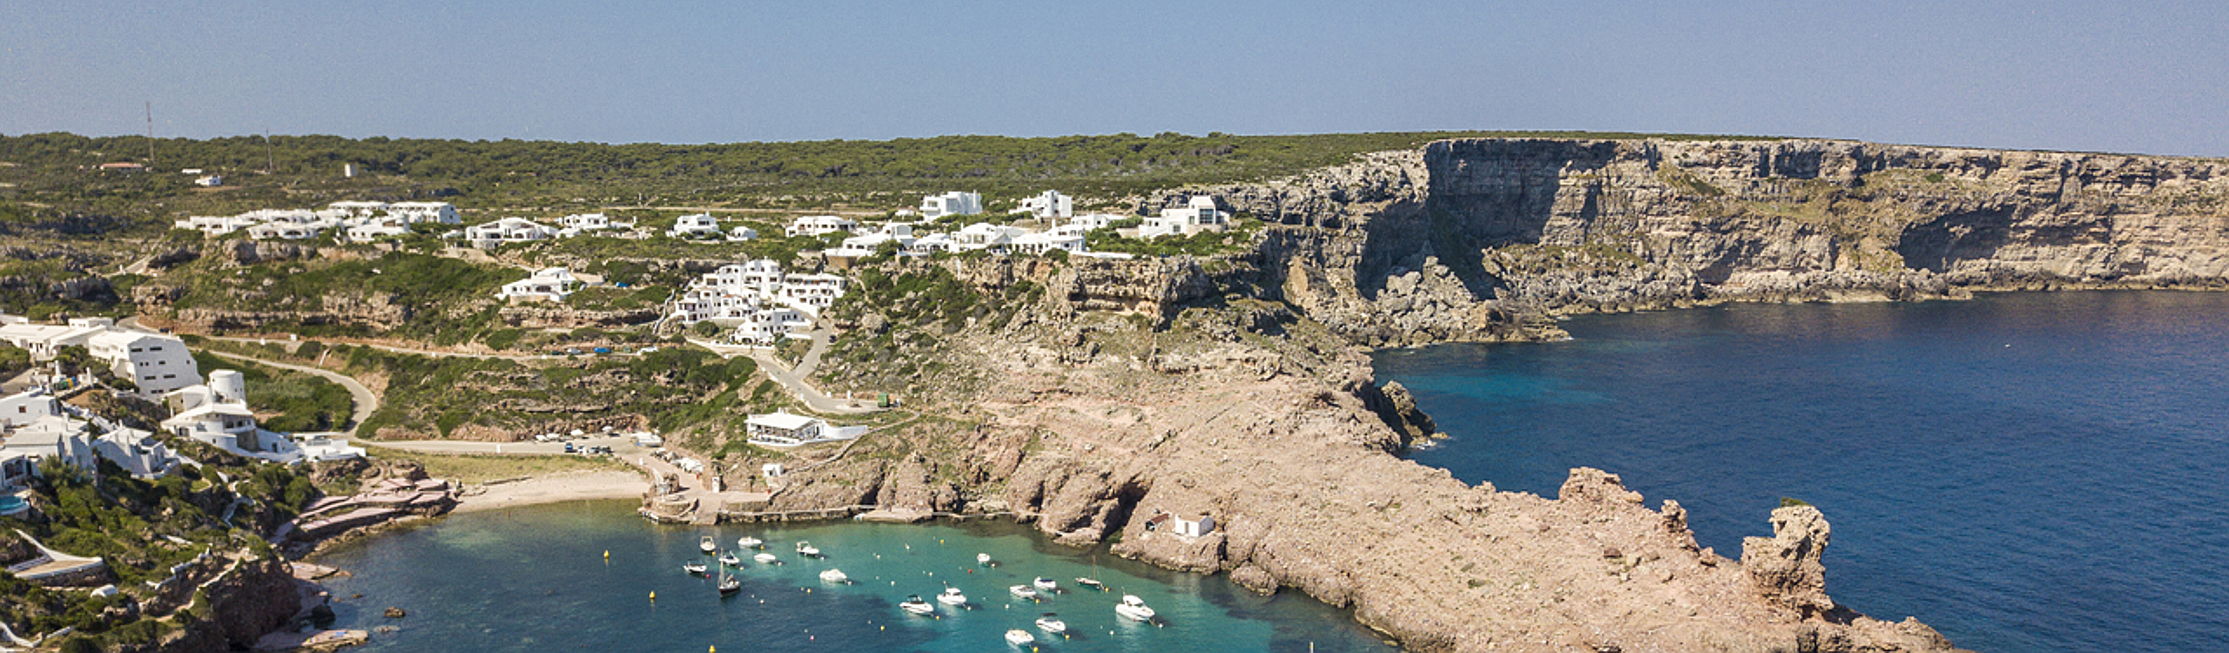  Mahón
- Find your dream home with Engel & Völkers Menorca